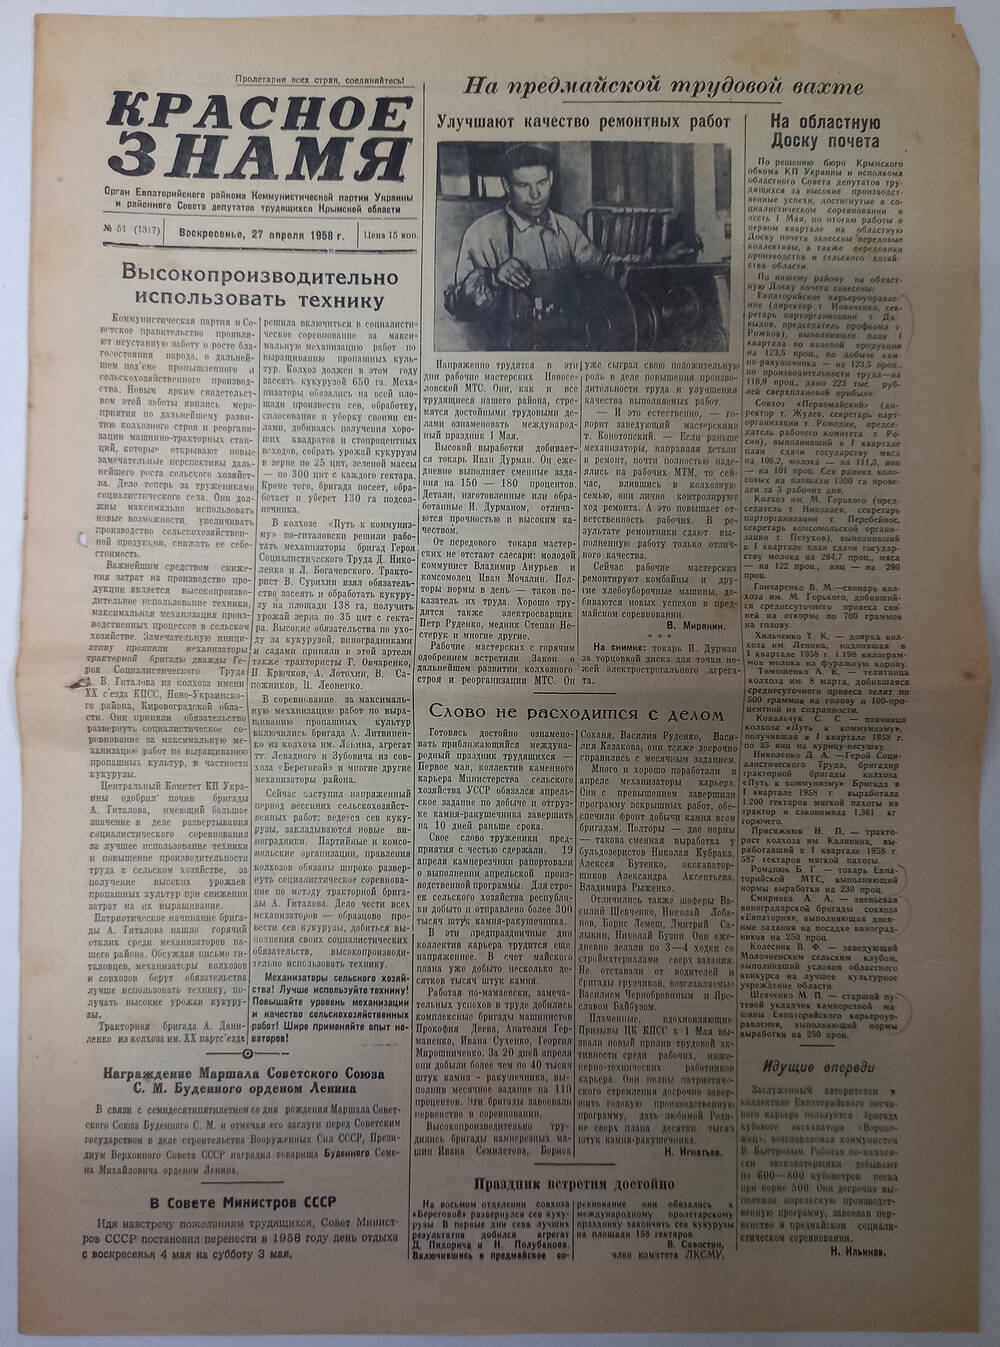 Газета Красное знамя №51(1317) от 27.04.1958 г.